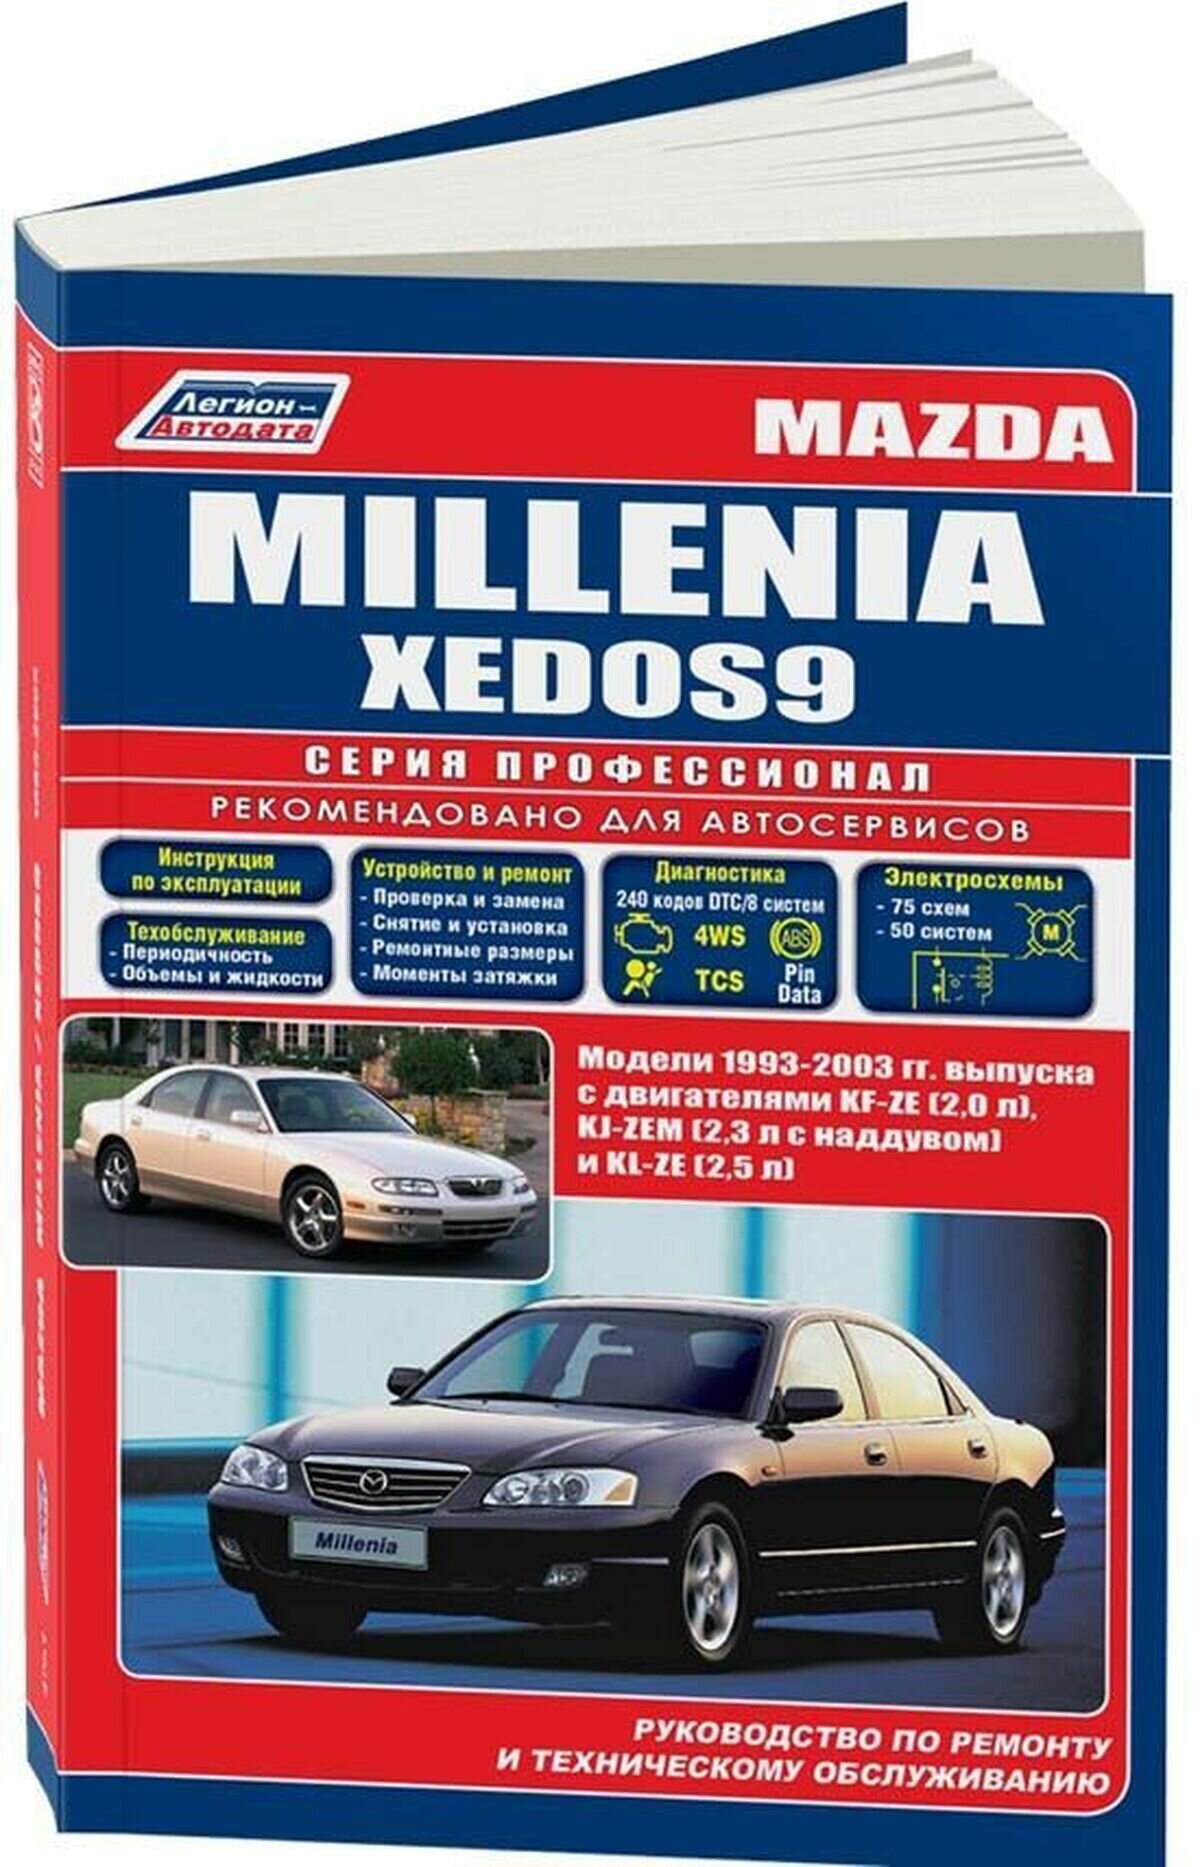 Автокнига: руководство / инструкция по ремонту и эксплуатации MAZDA MILLENIA (мазда миления) / XEDOS (кседос) / EUNOS 800 (еунос 800) бензин 1993-2003 годы выпуска, 978-588850-490-1, издательство Легион-Aвтодата